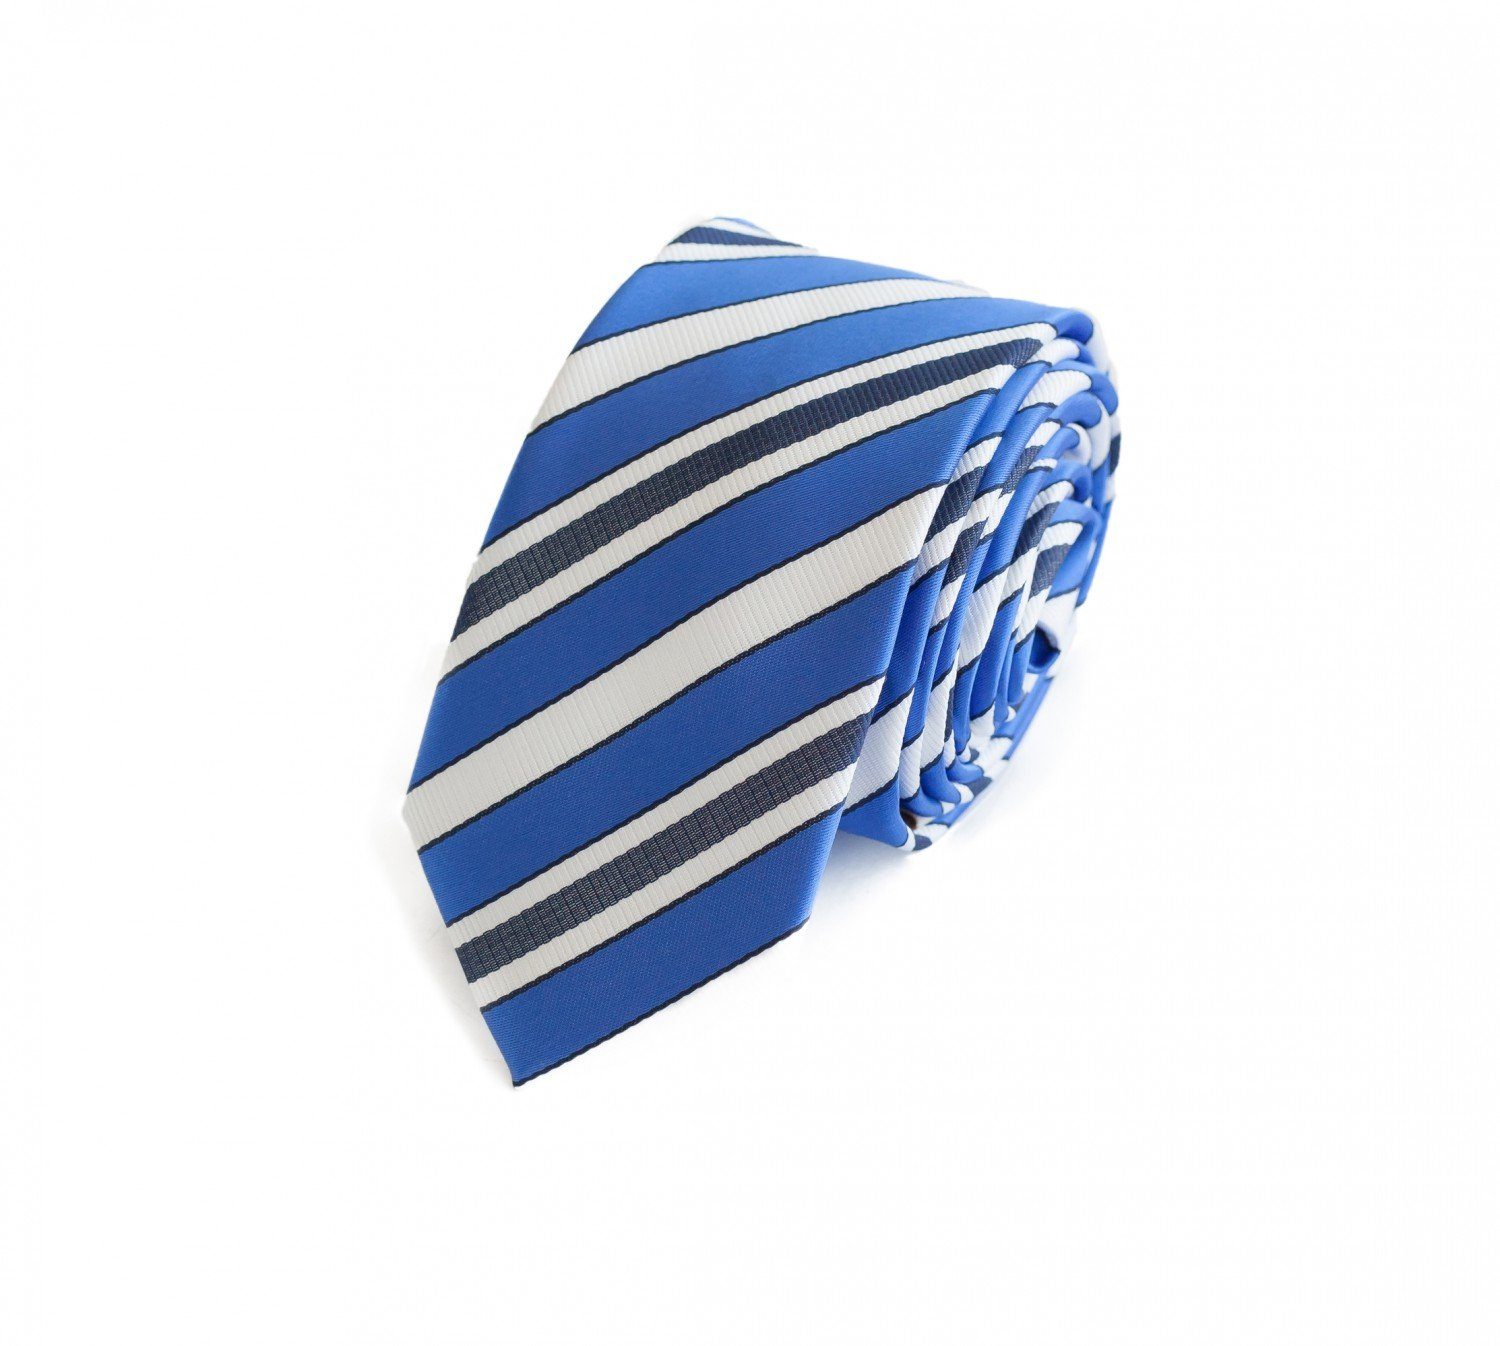 Fabio - in (6cm), Schmal (ohne Blau/Weiß/Dunkelblau Krawatten Breite Gestreifte Schlips Herren 6cm Box, Weiße Gestreift) Farini Krawatte Blau